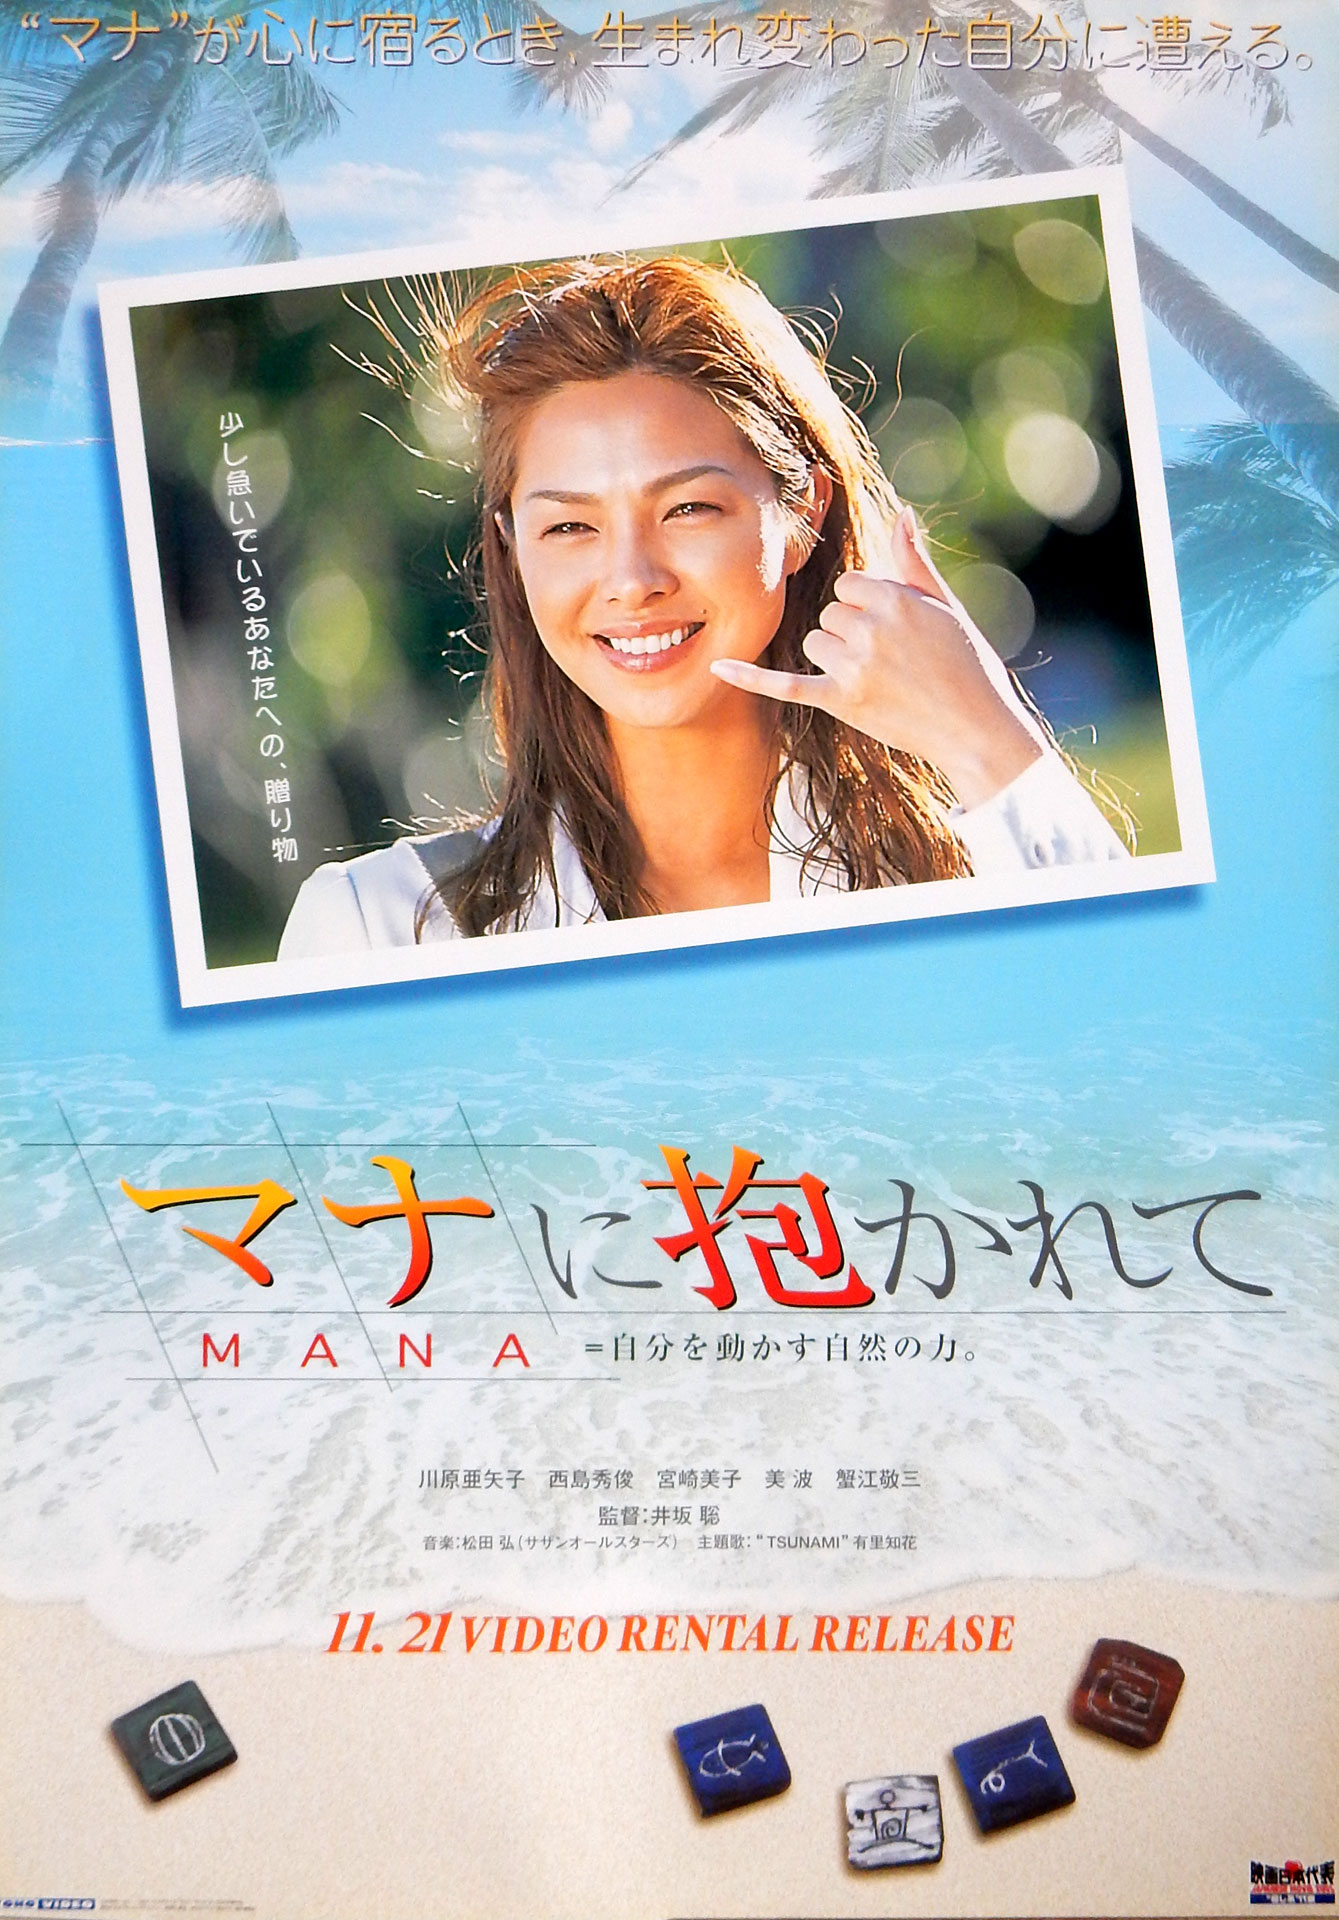 マナに抱かれて/MANA=自分を動かす自然の力 （川原亜矢子）のポスター